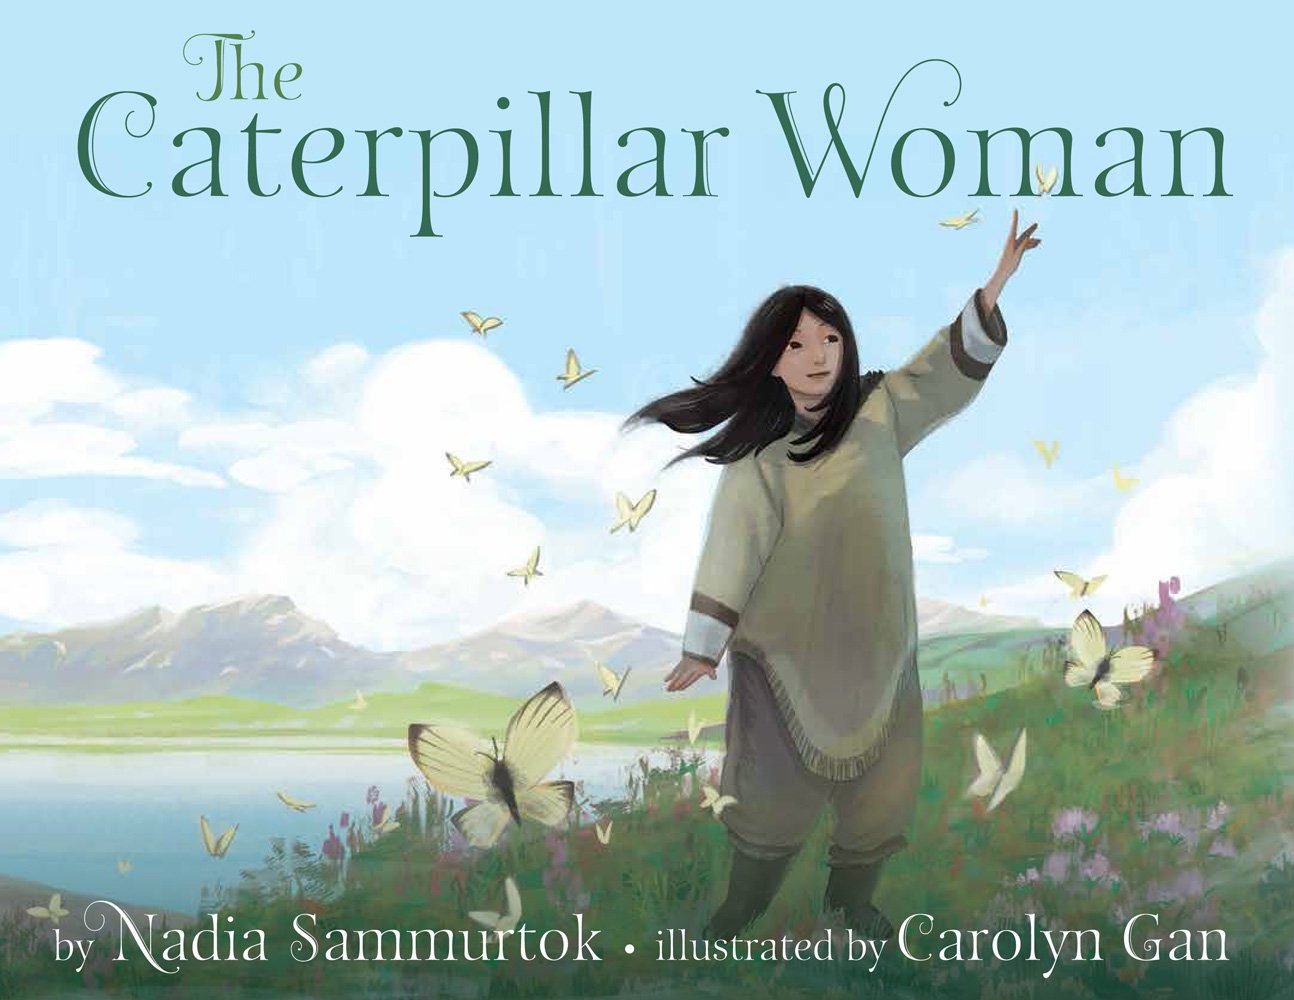 The Caterpillar Woman